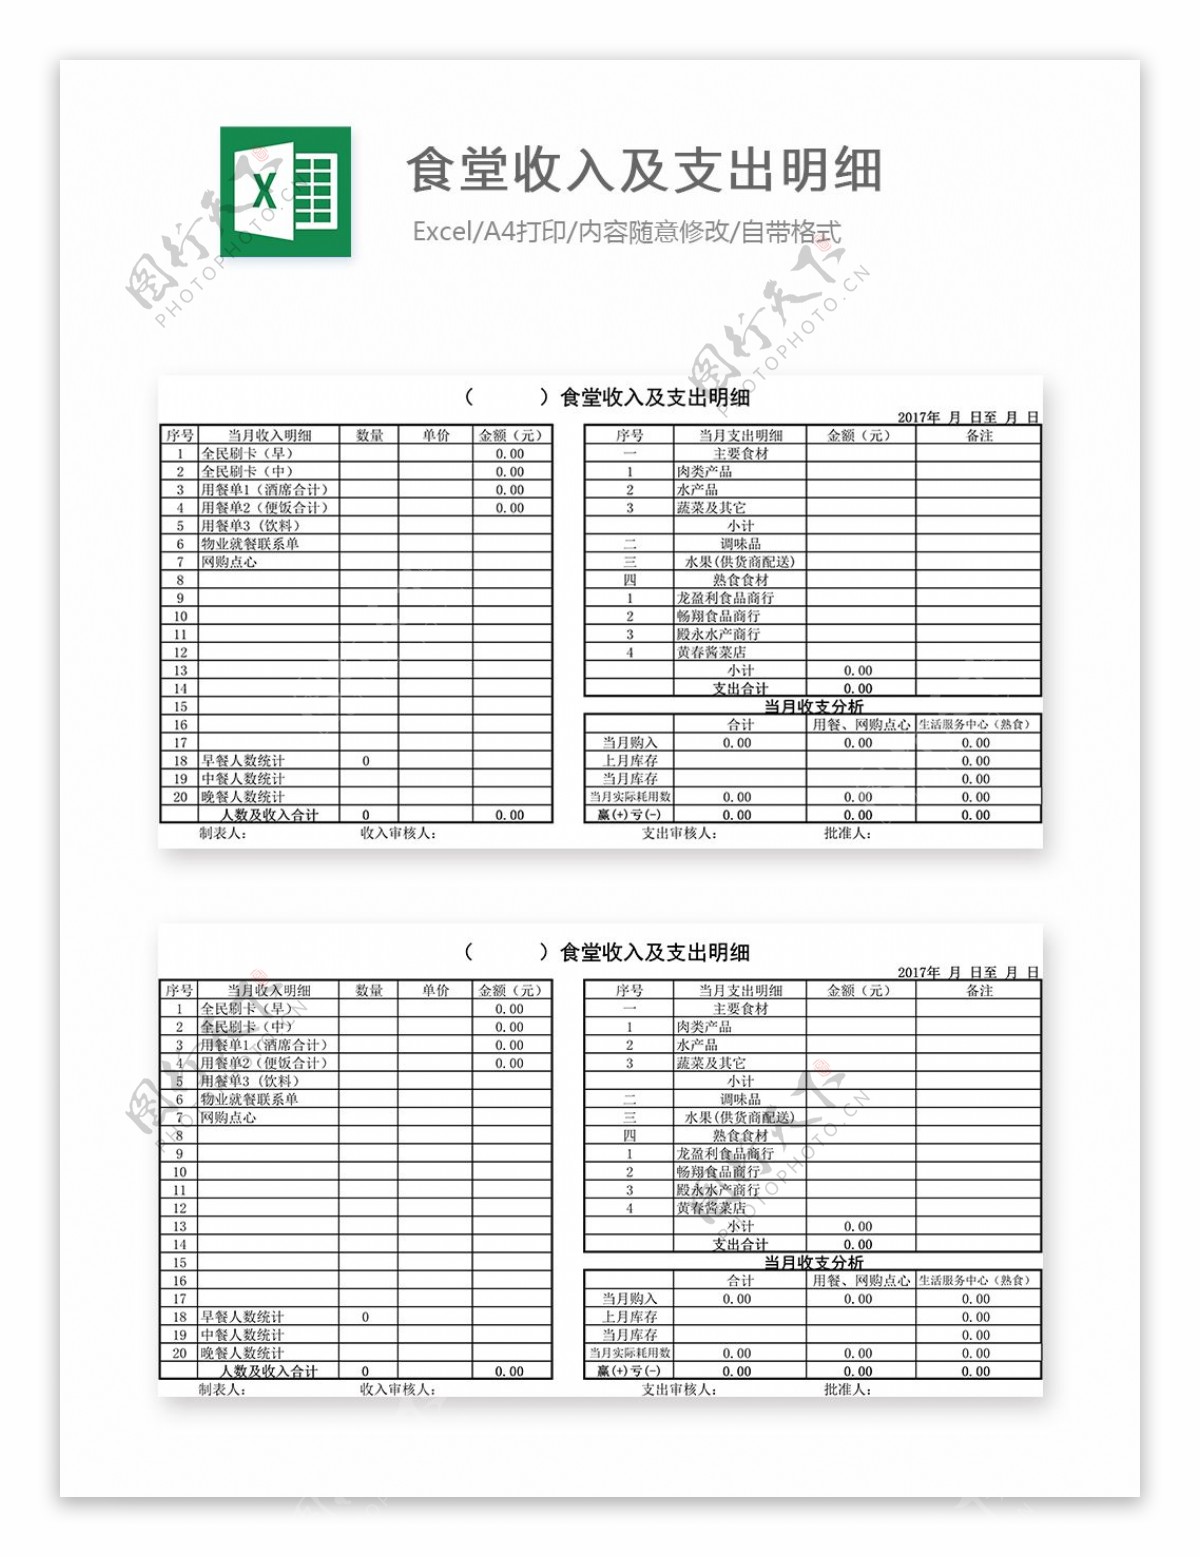 食堂收入及支出明细Excel图表模板